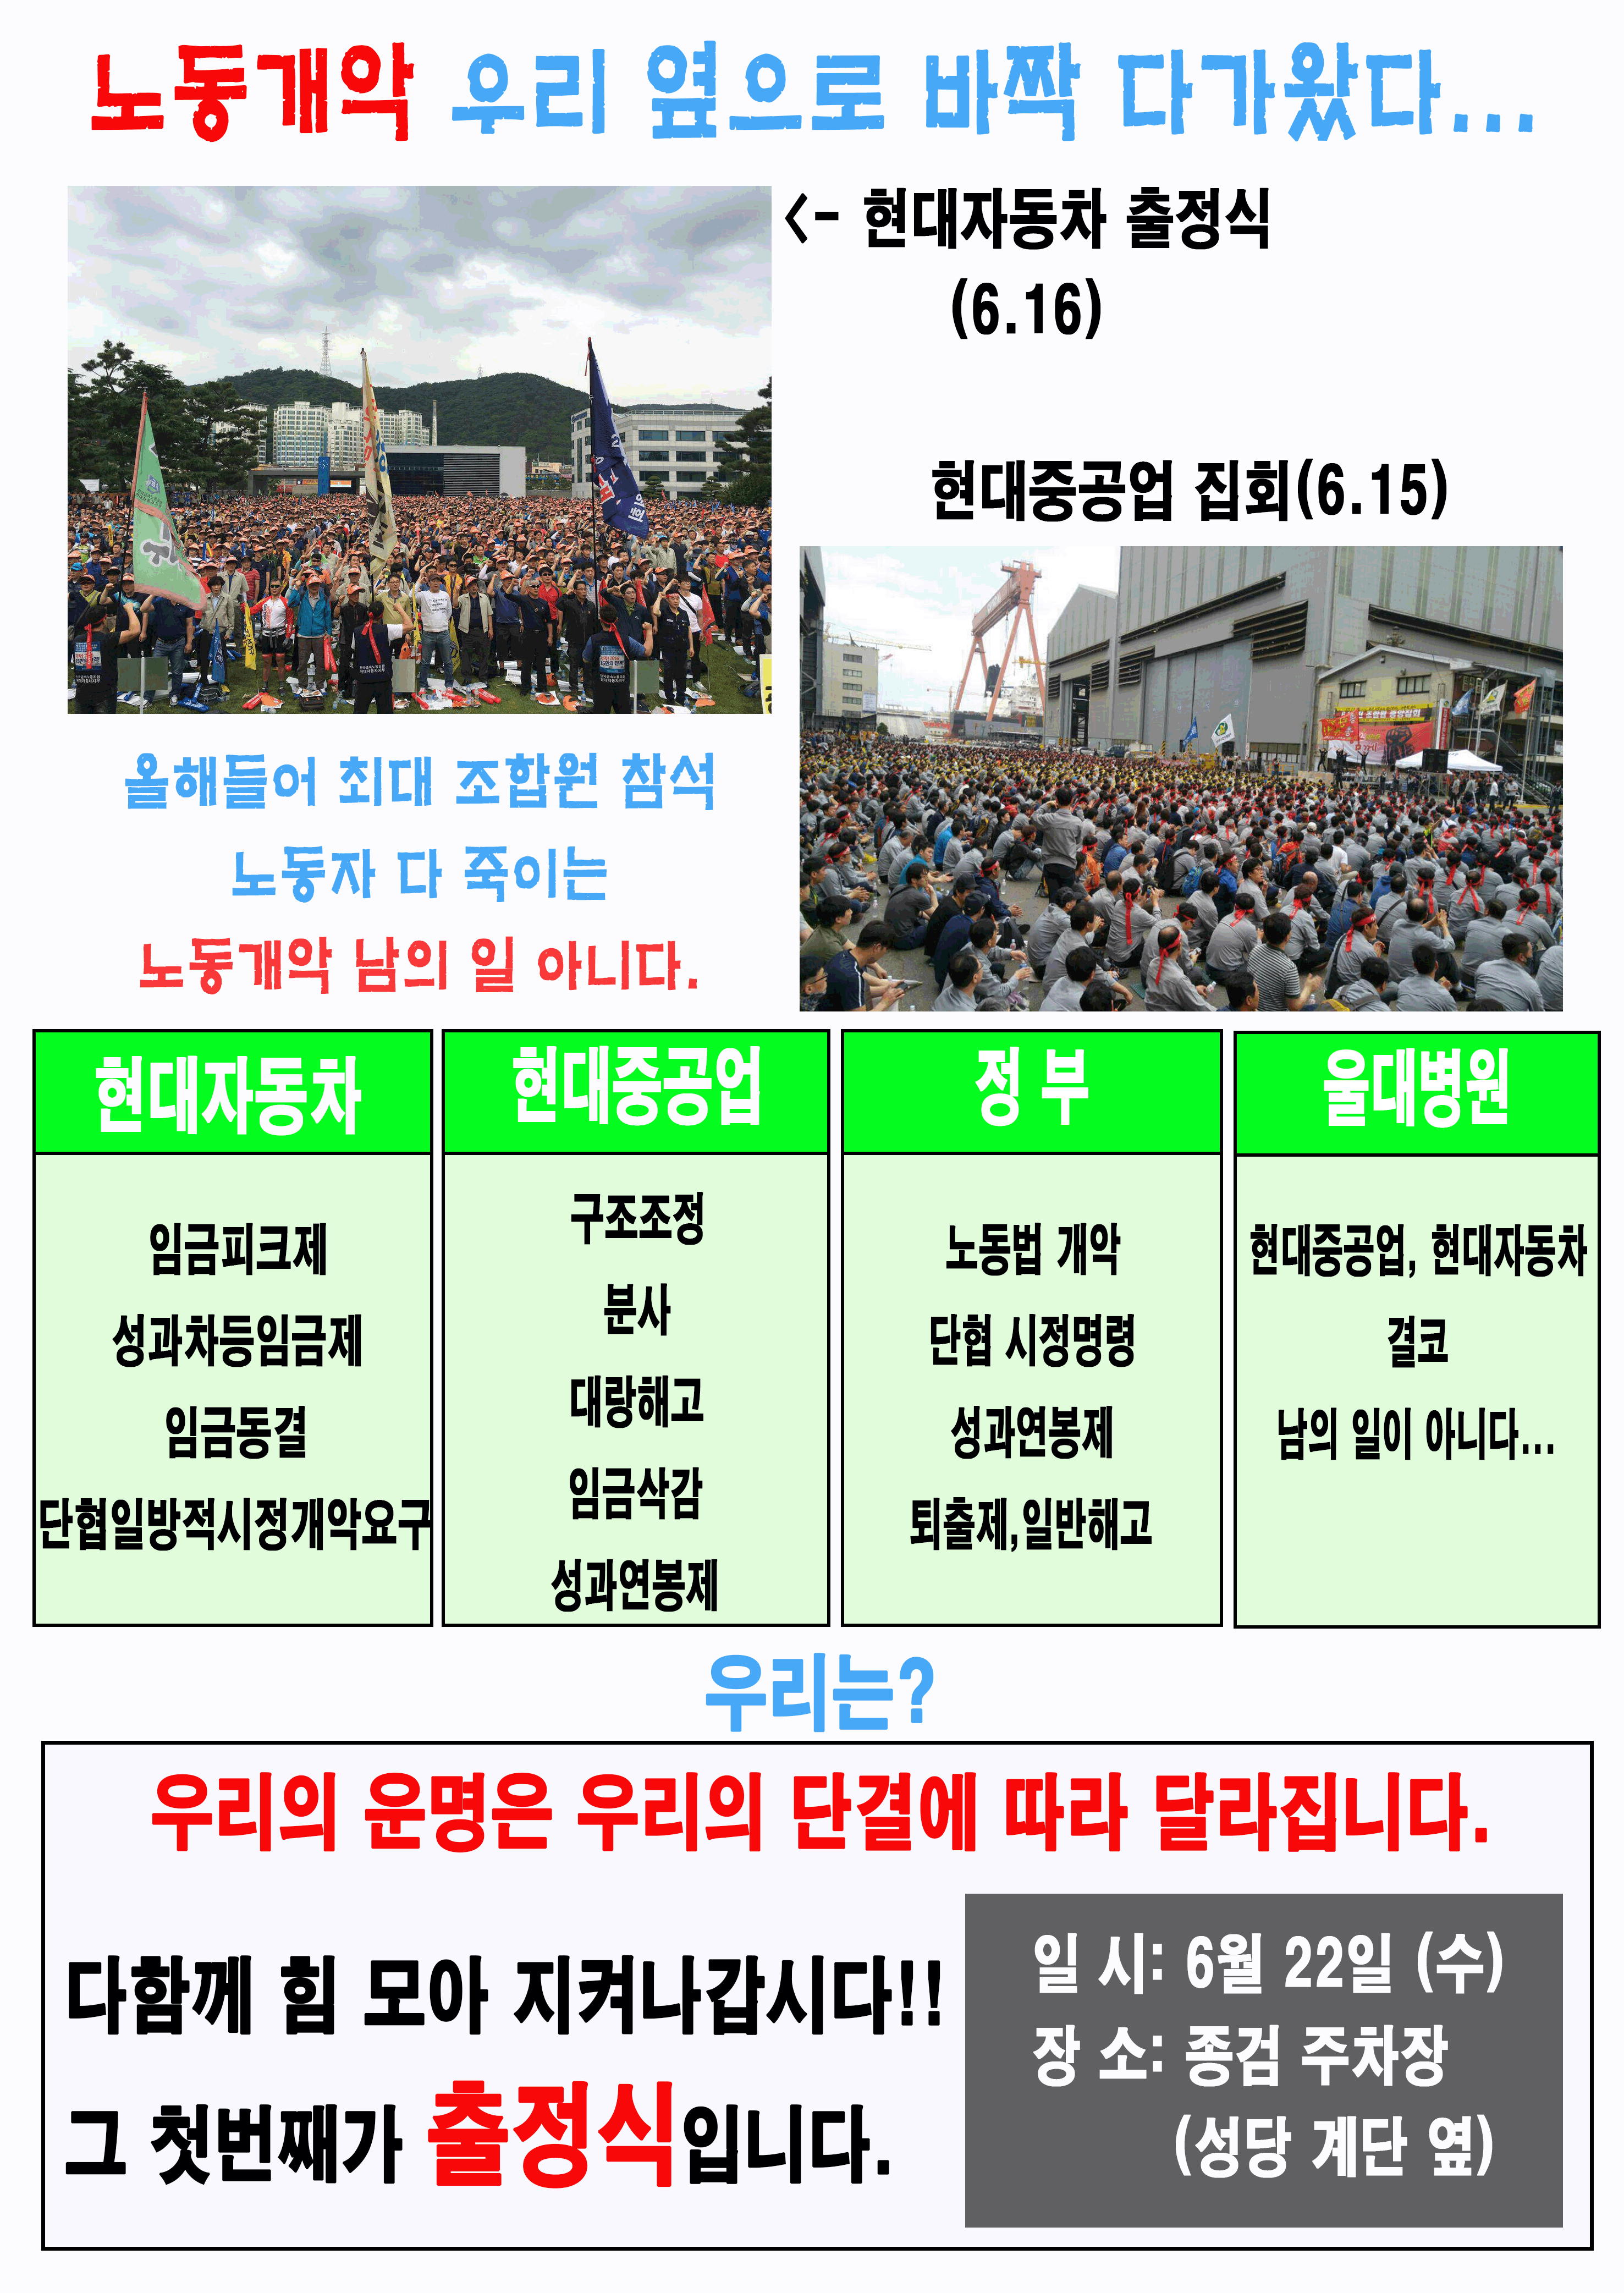 2016 투쟁속보 11호 뒷면(울대).gif